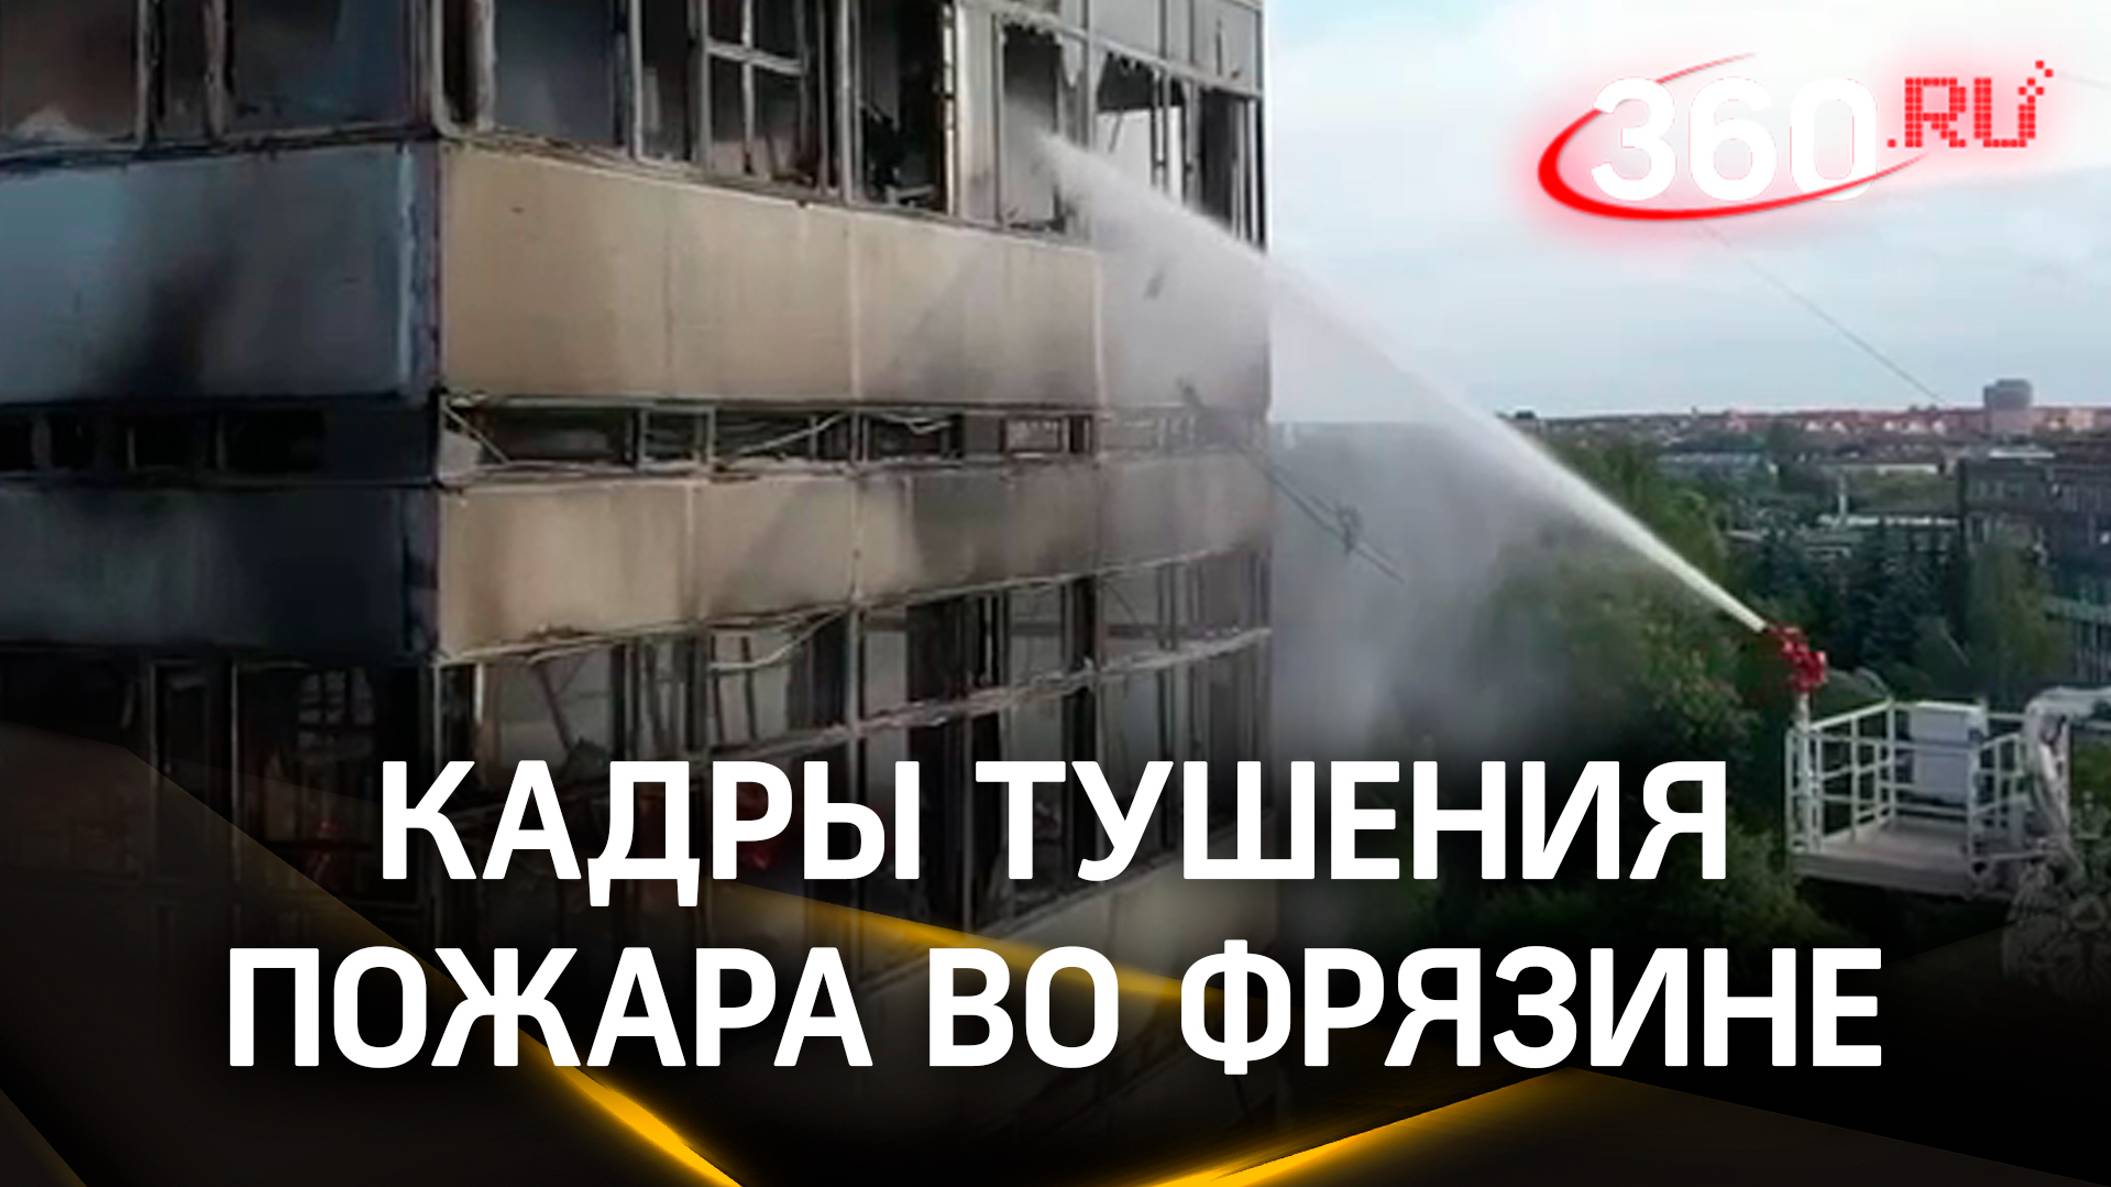 Тушение пожара во Фрязине. Видео от МЧС России